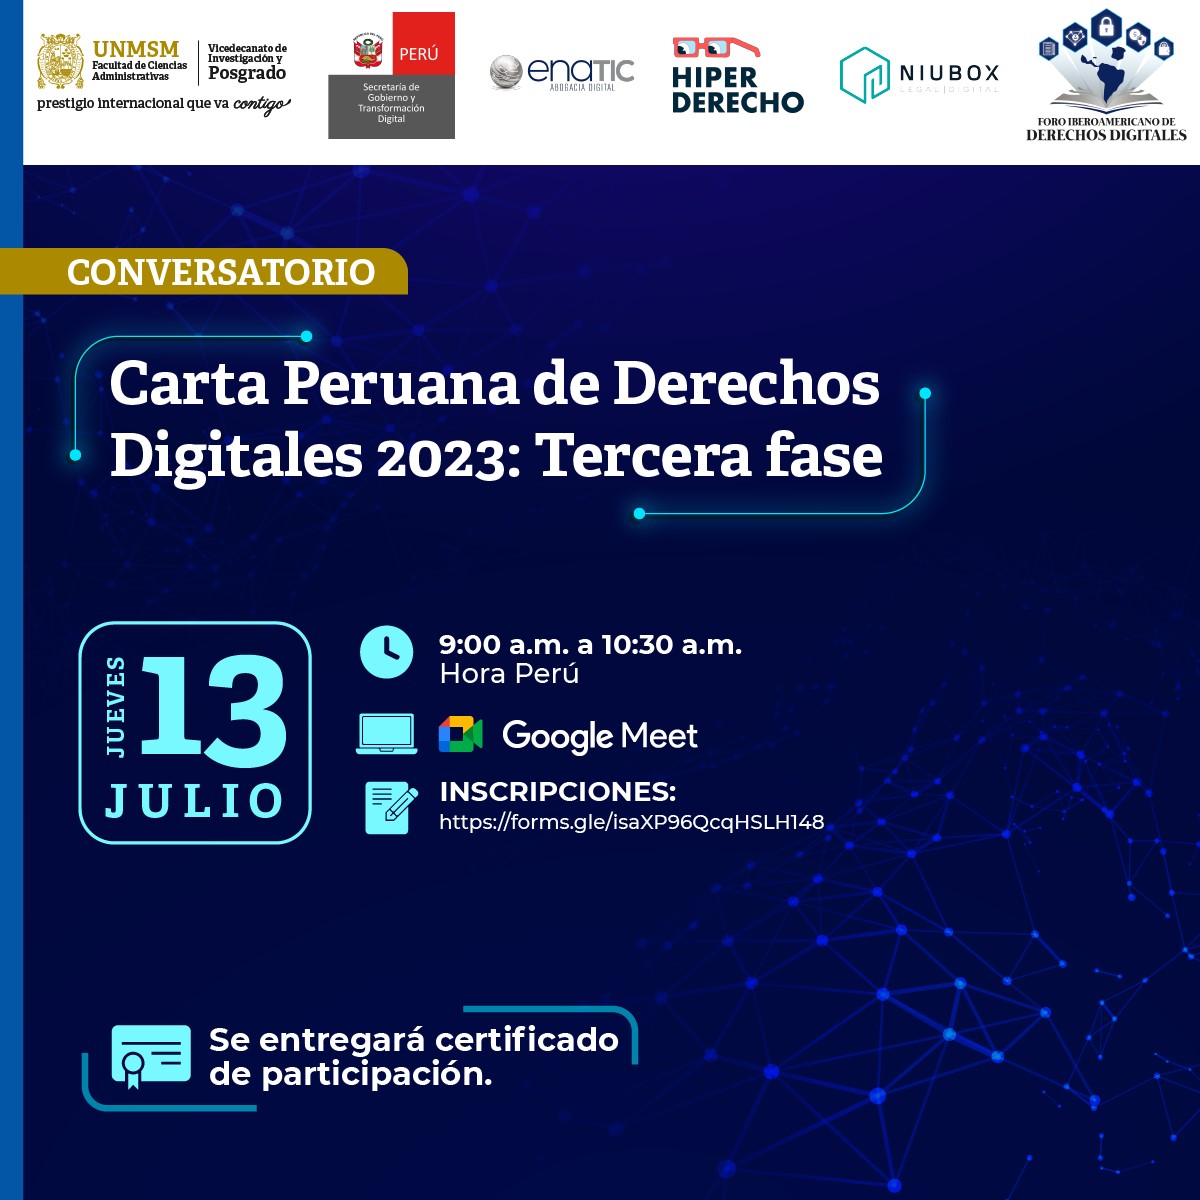 Conversatorio sobre la Carta Peruana de Derechos Digitales 2023